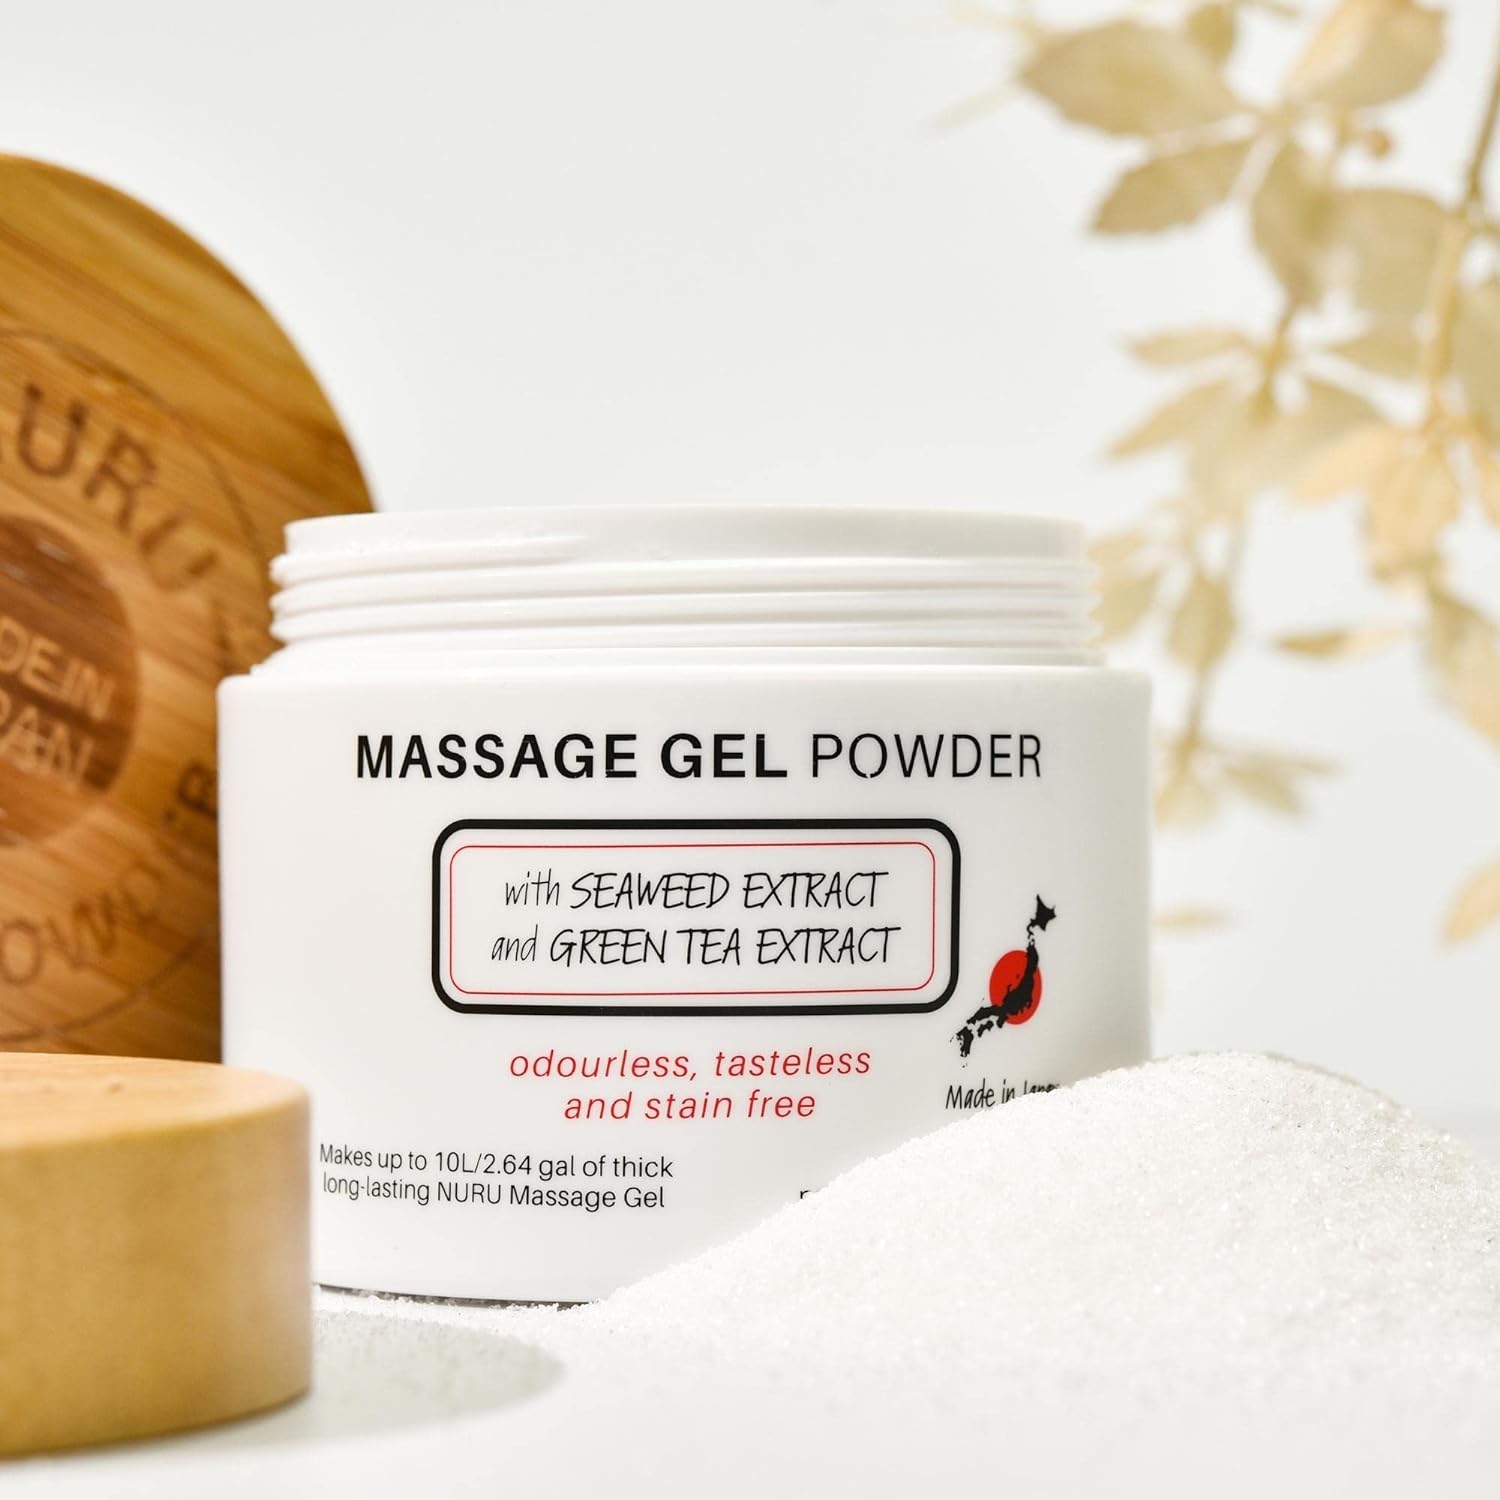 nuru massage gel powder review